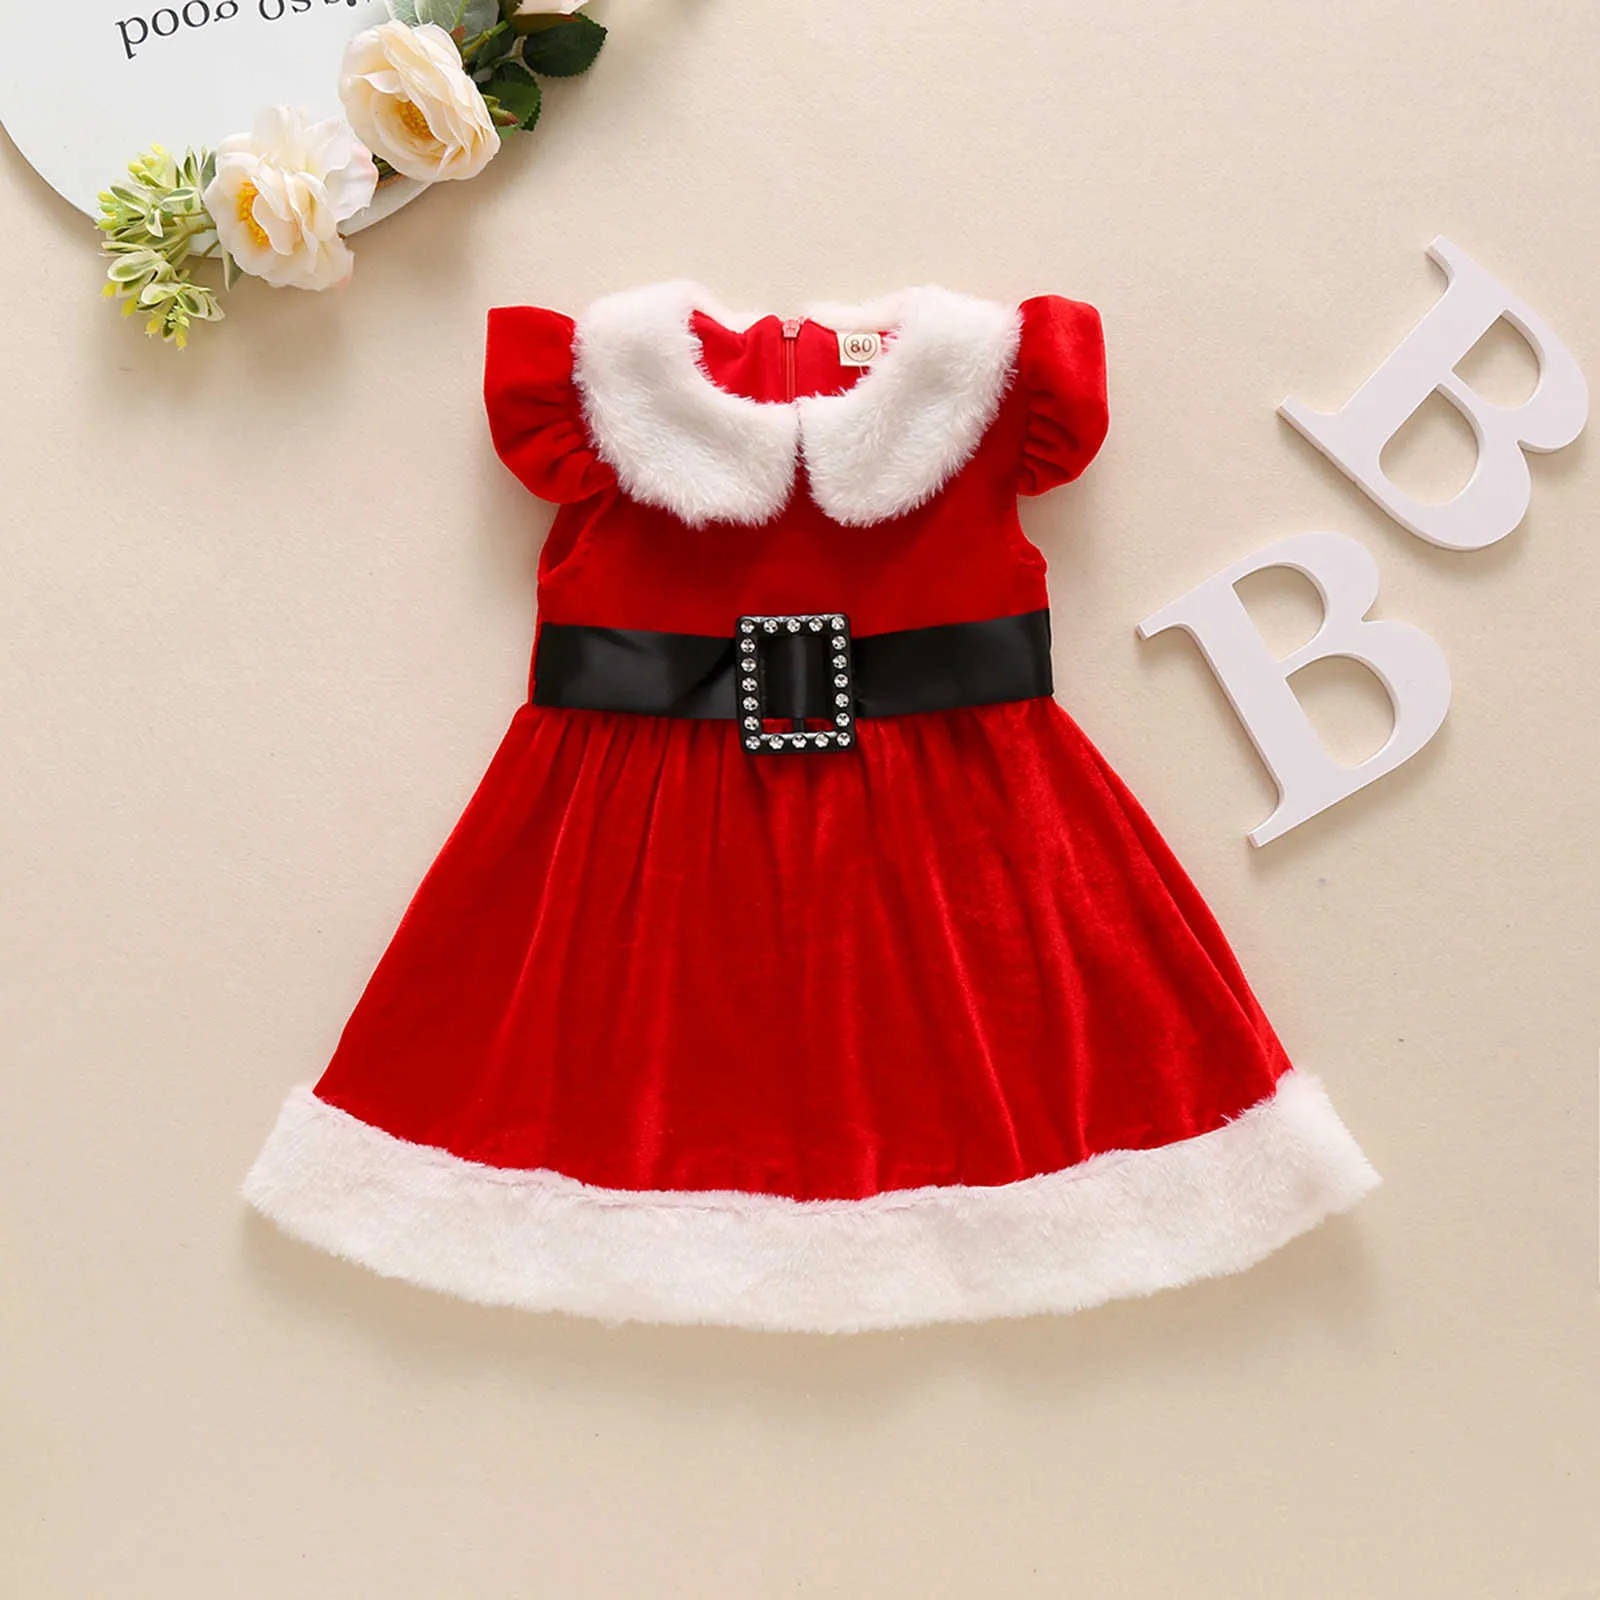 6m-5t Girls Weihnachten Kleid Weihnachten Fluffys Rüschenblasenrock Prinzessin Kleider Kleidung für Kleinkind Baby Girl Kleid Q0716